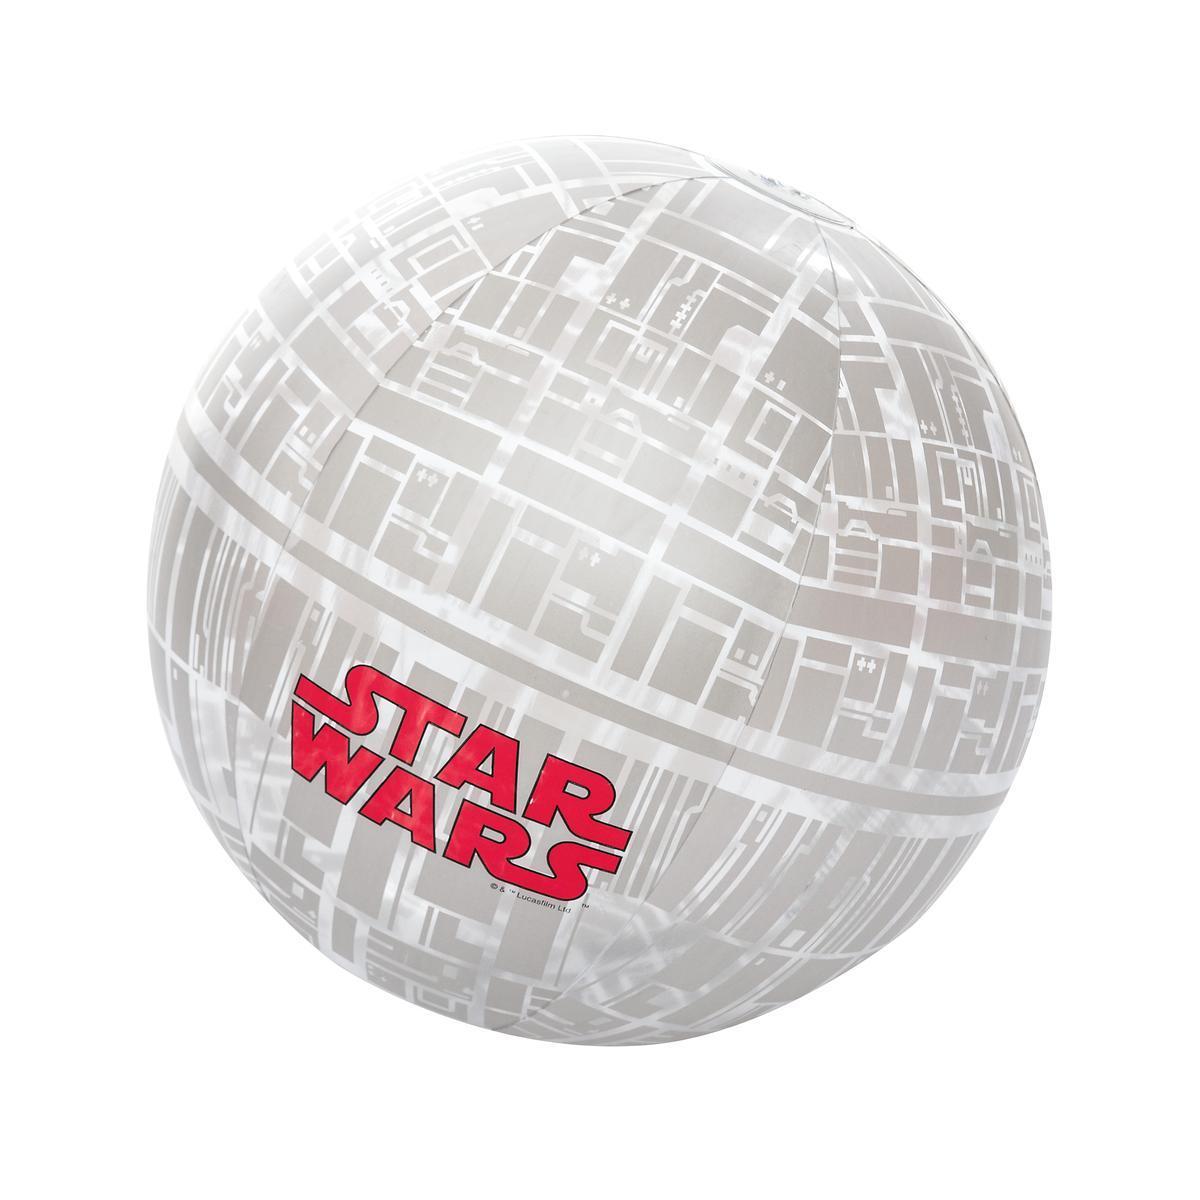 Ballon gonflable Star Wars - Plastique - Ø 61 cm - Gris, blanc et rouge